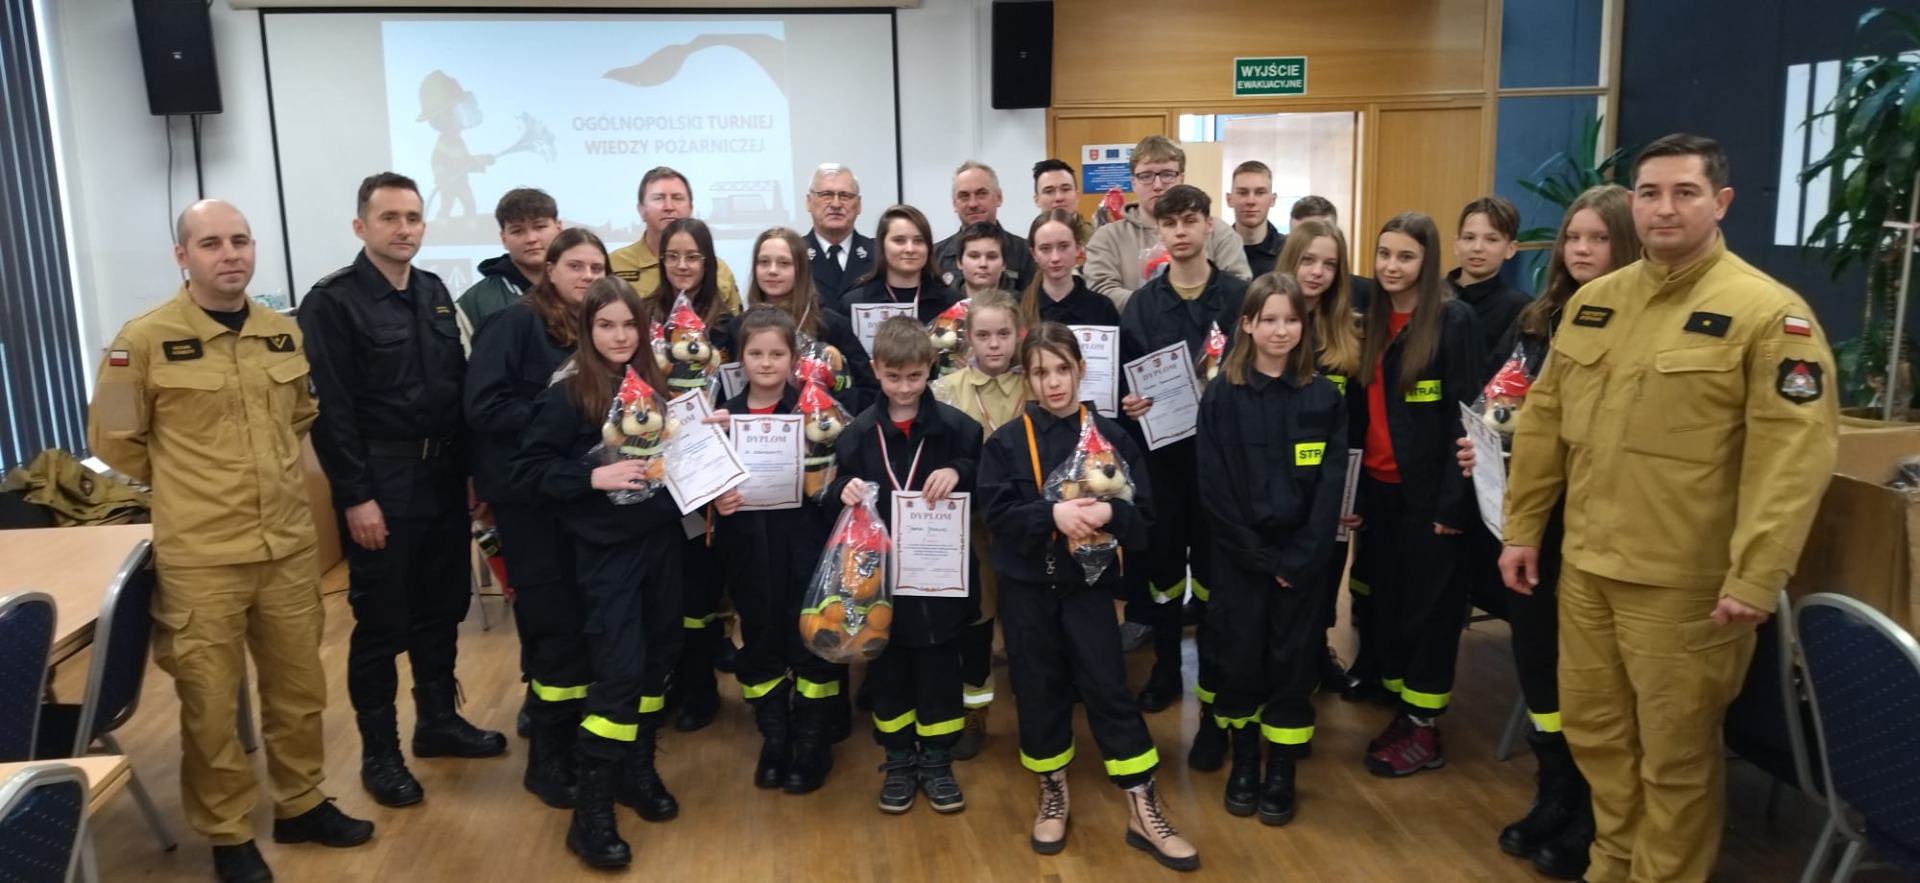 Liczna grupa młodzieży w strojach strażackich  z dyplomami i nagrodami oraz przedstawiciele organizatorów